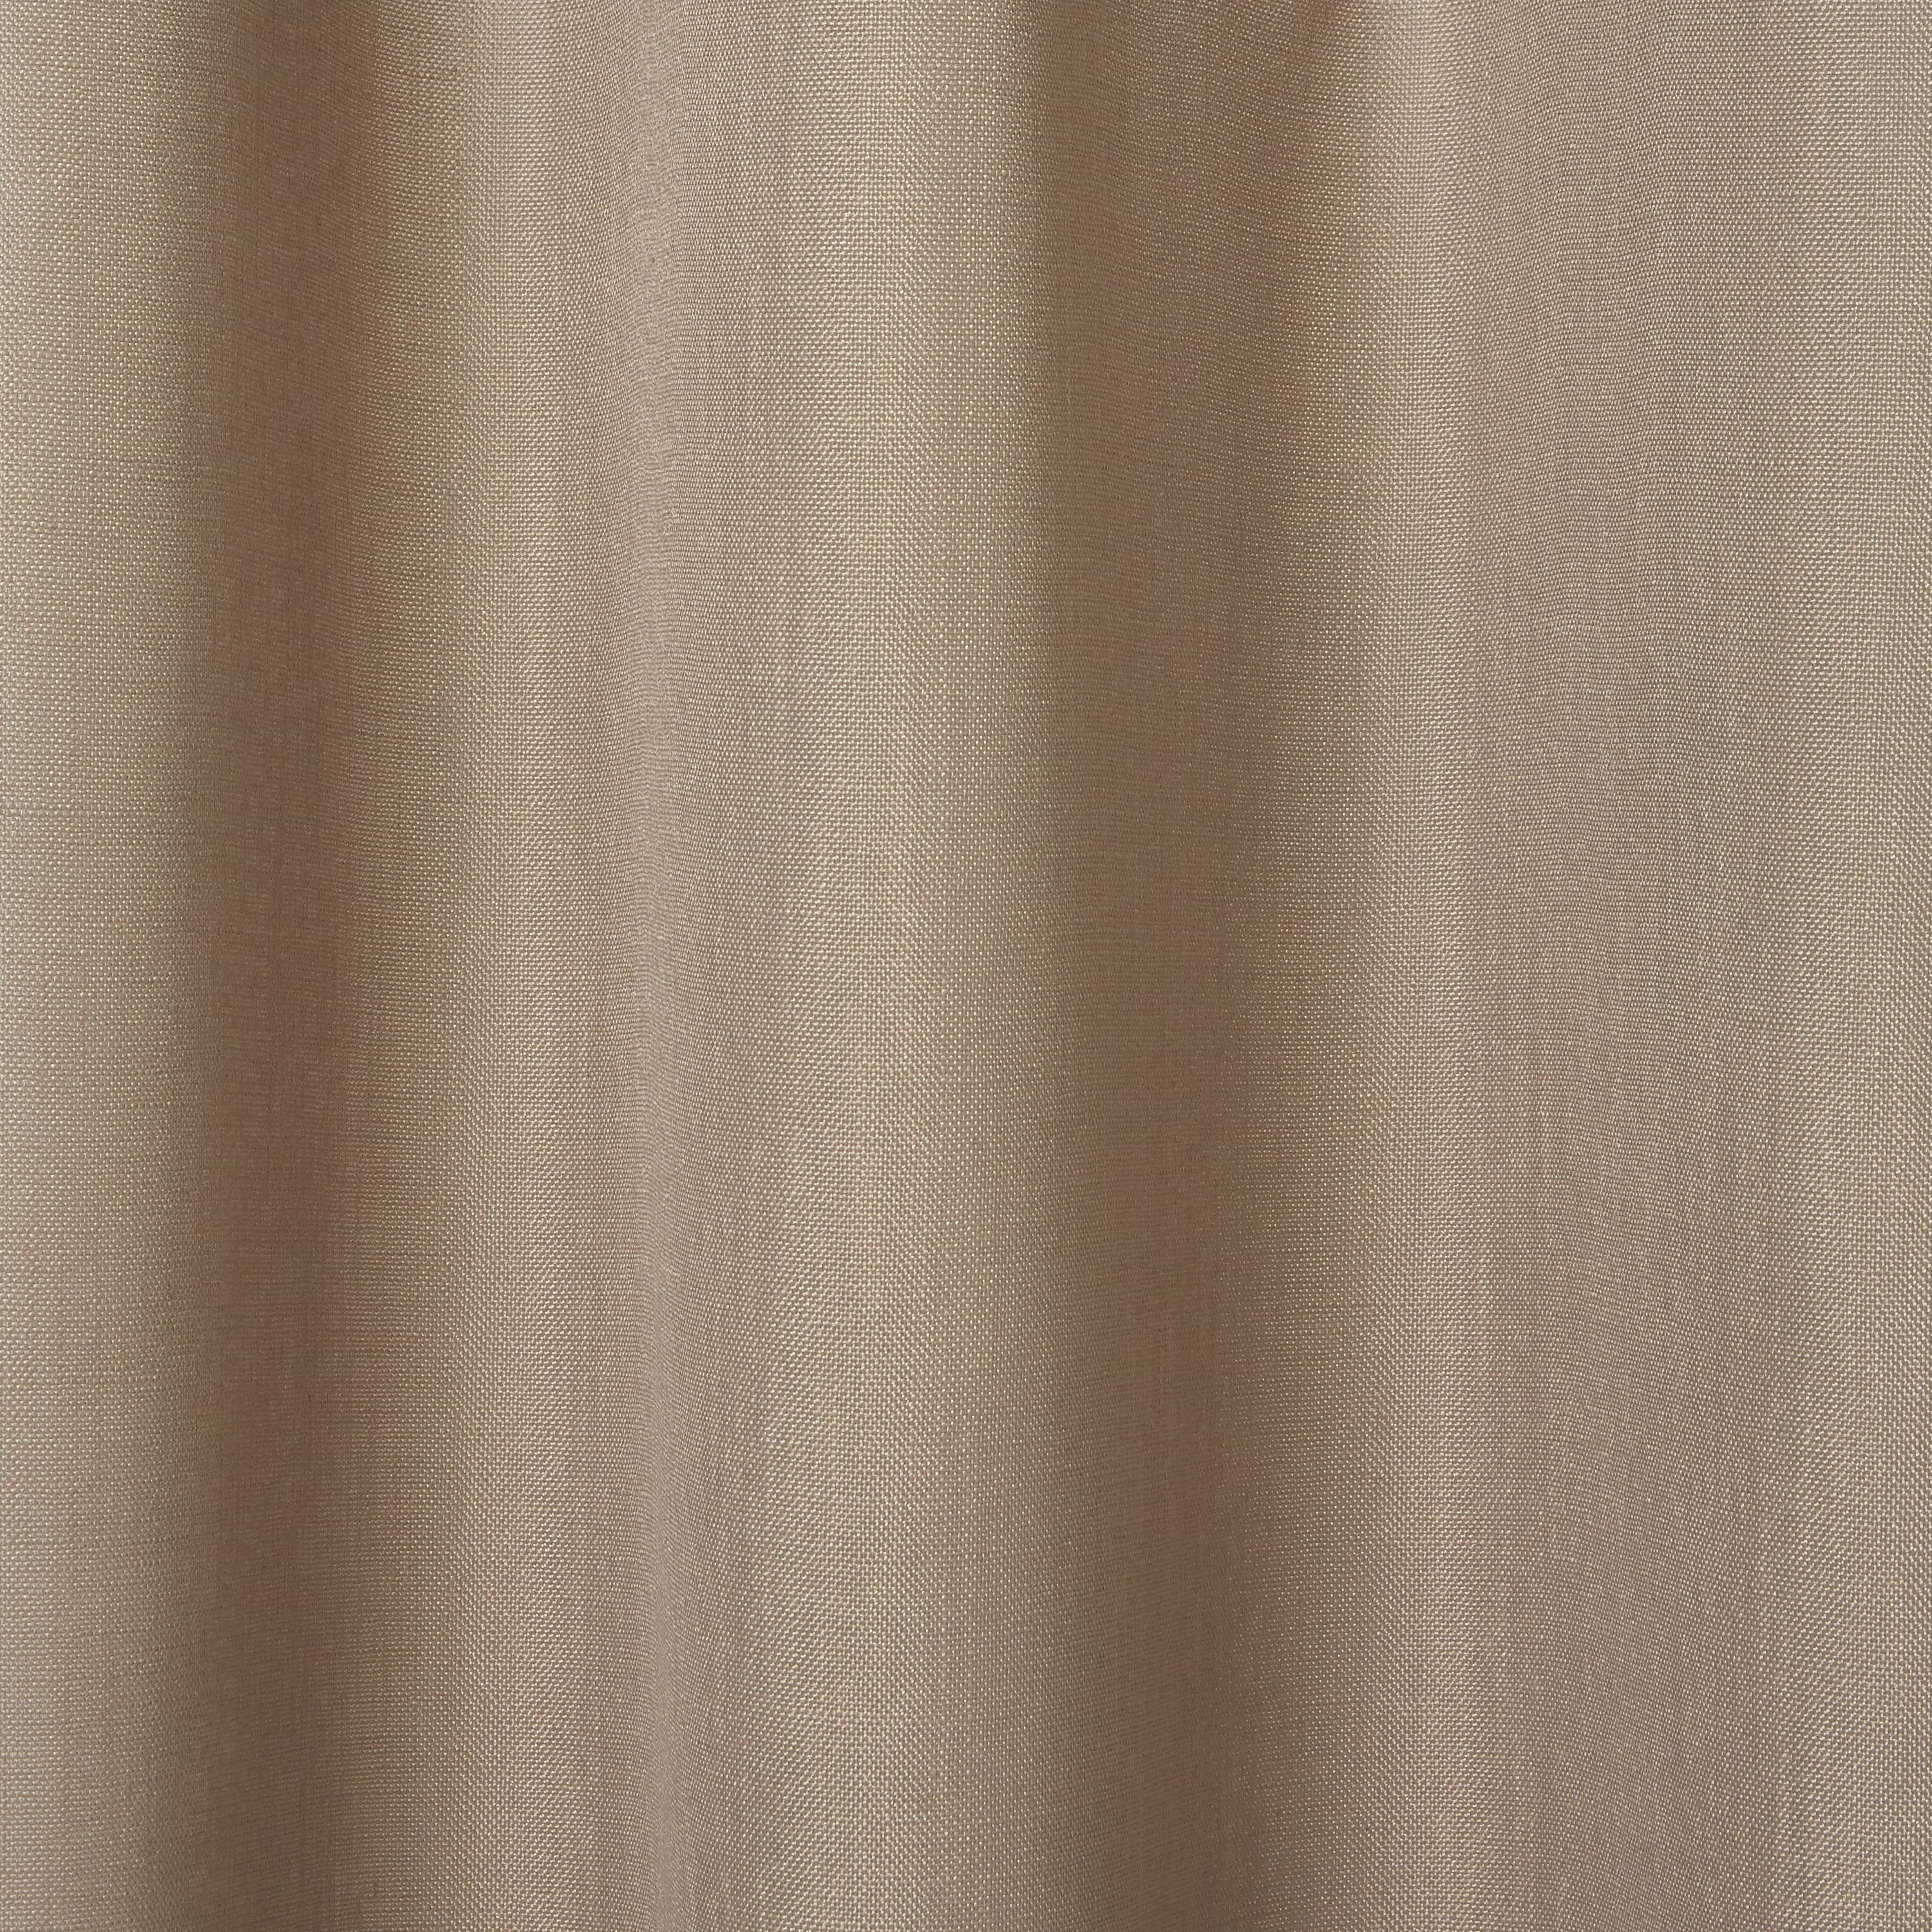 Kippens Beige plain Unlined Eyelet Voile curtain (W)140cm (L)260cm, Single